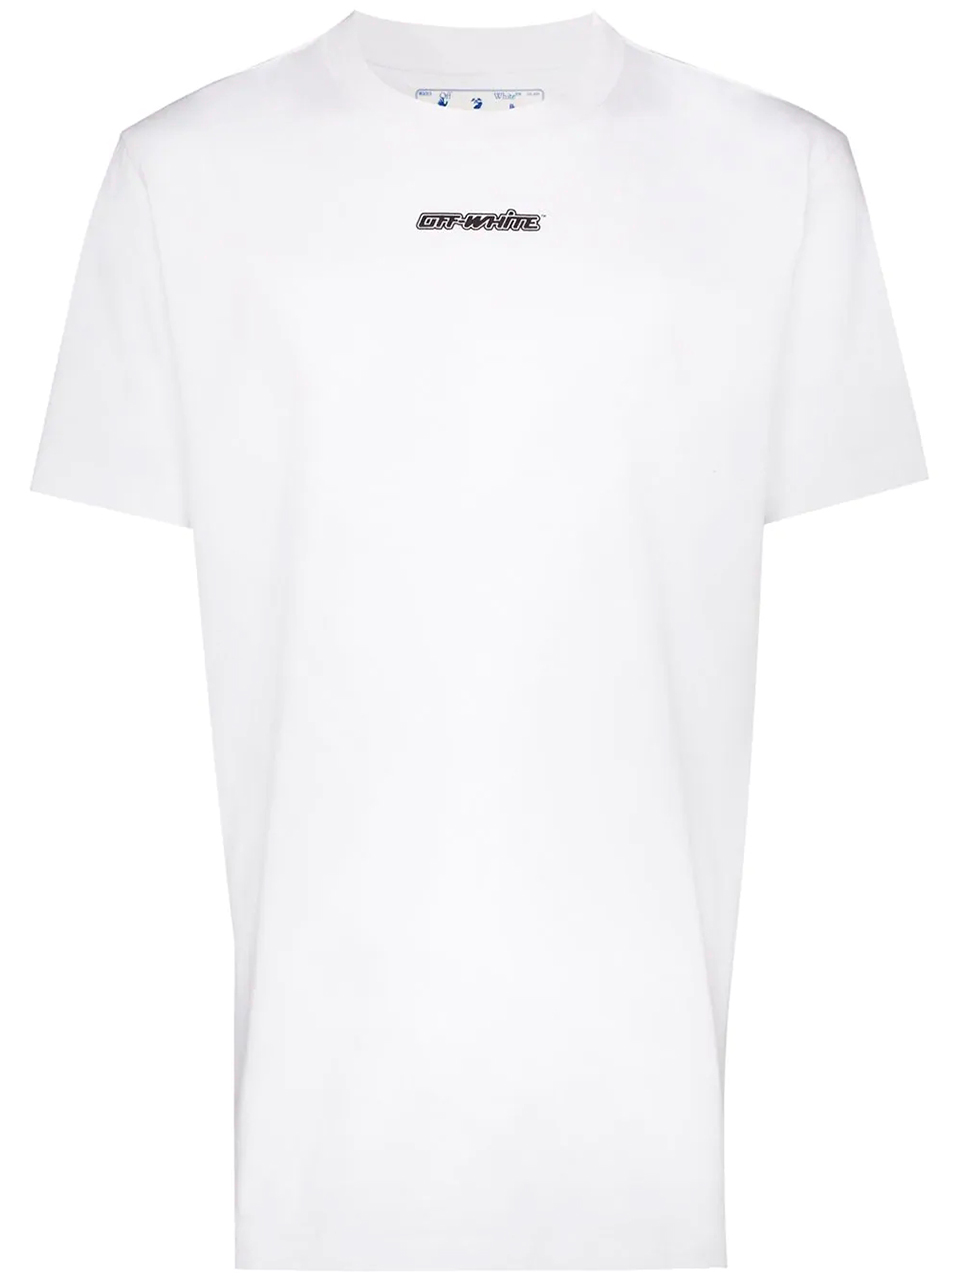 Imagem de: Camiseta Off-White Branca com Estampa Setas Azul